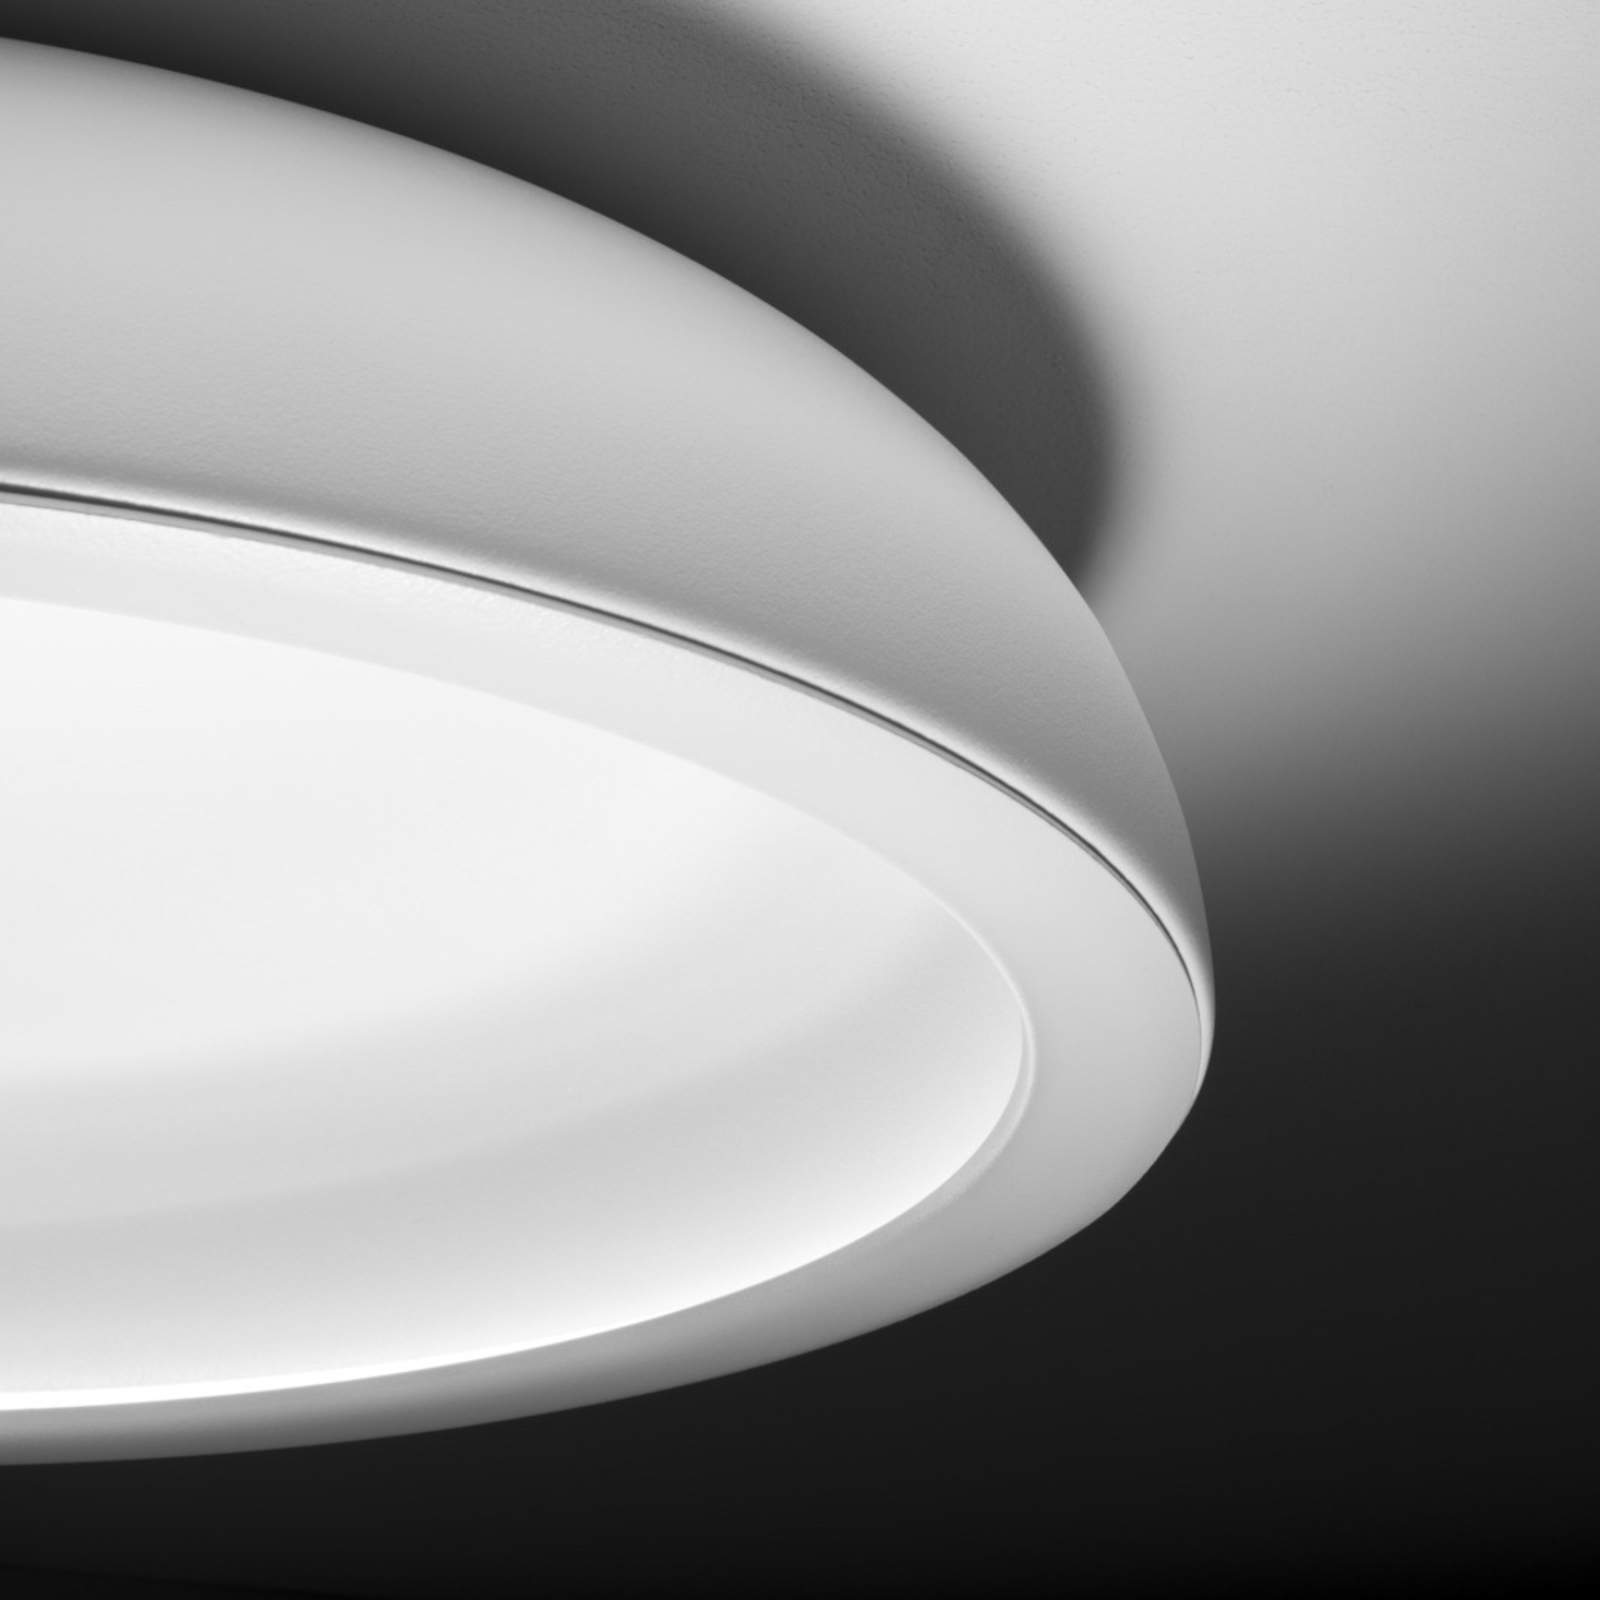 Stilnovo Reflexio LED plafondlamp, Ø65cm wit